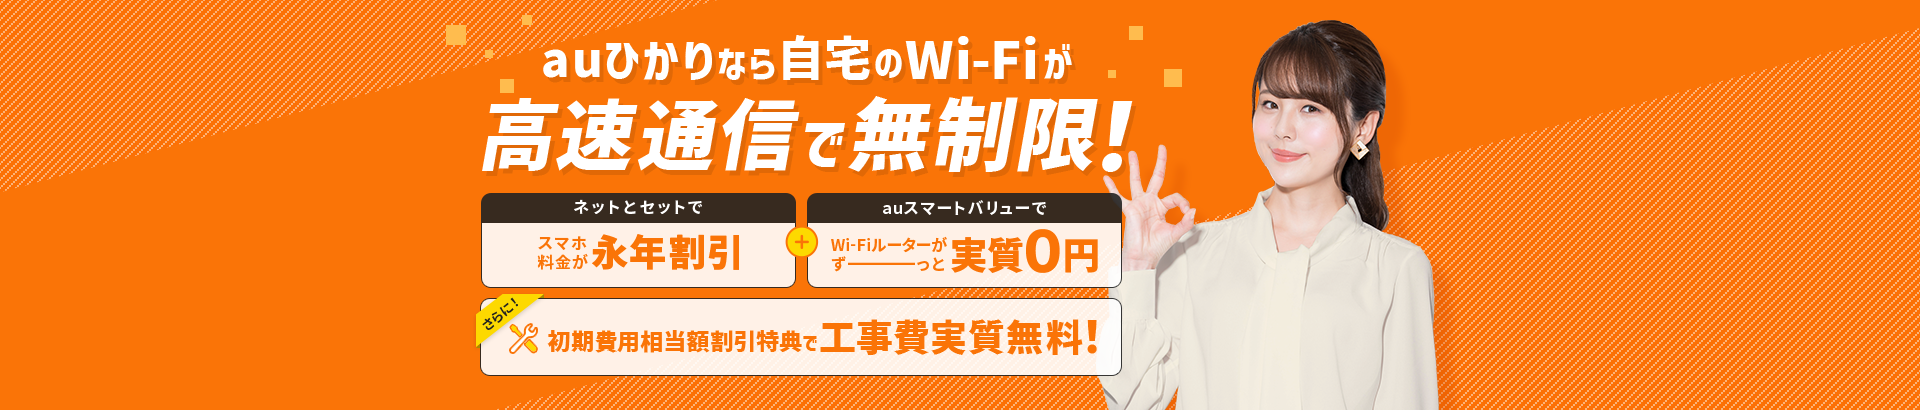 Auひかり Wi Fiサービス インターネット光回線